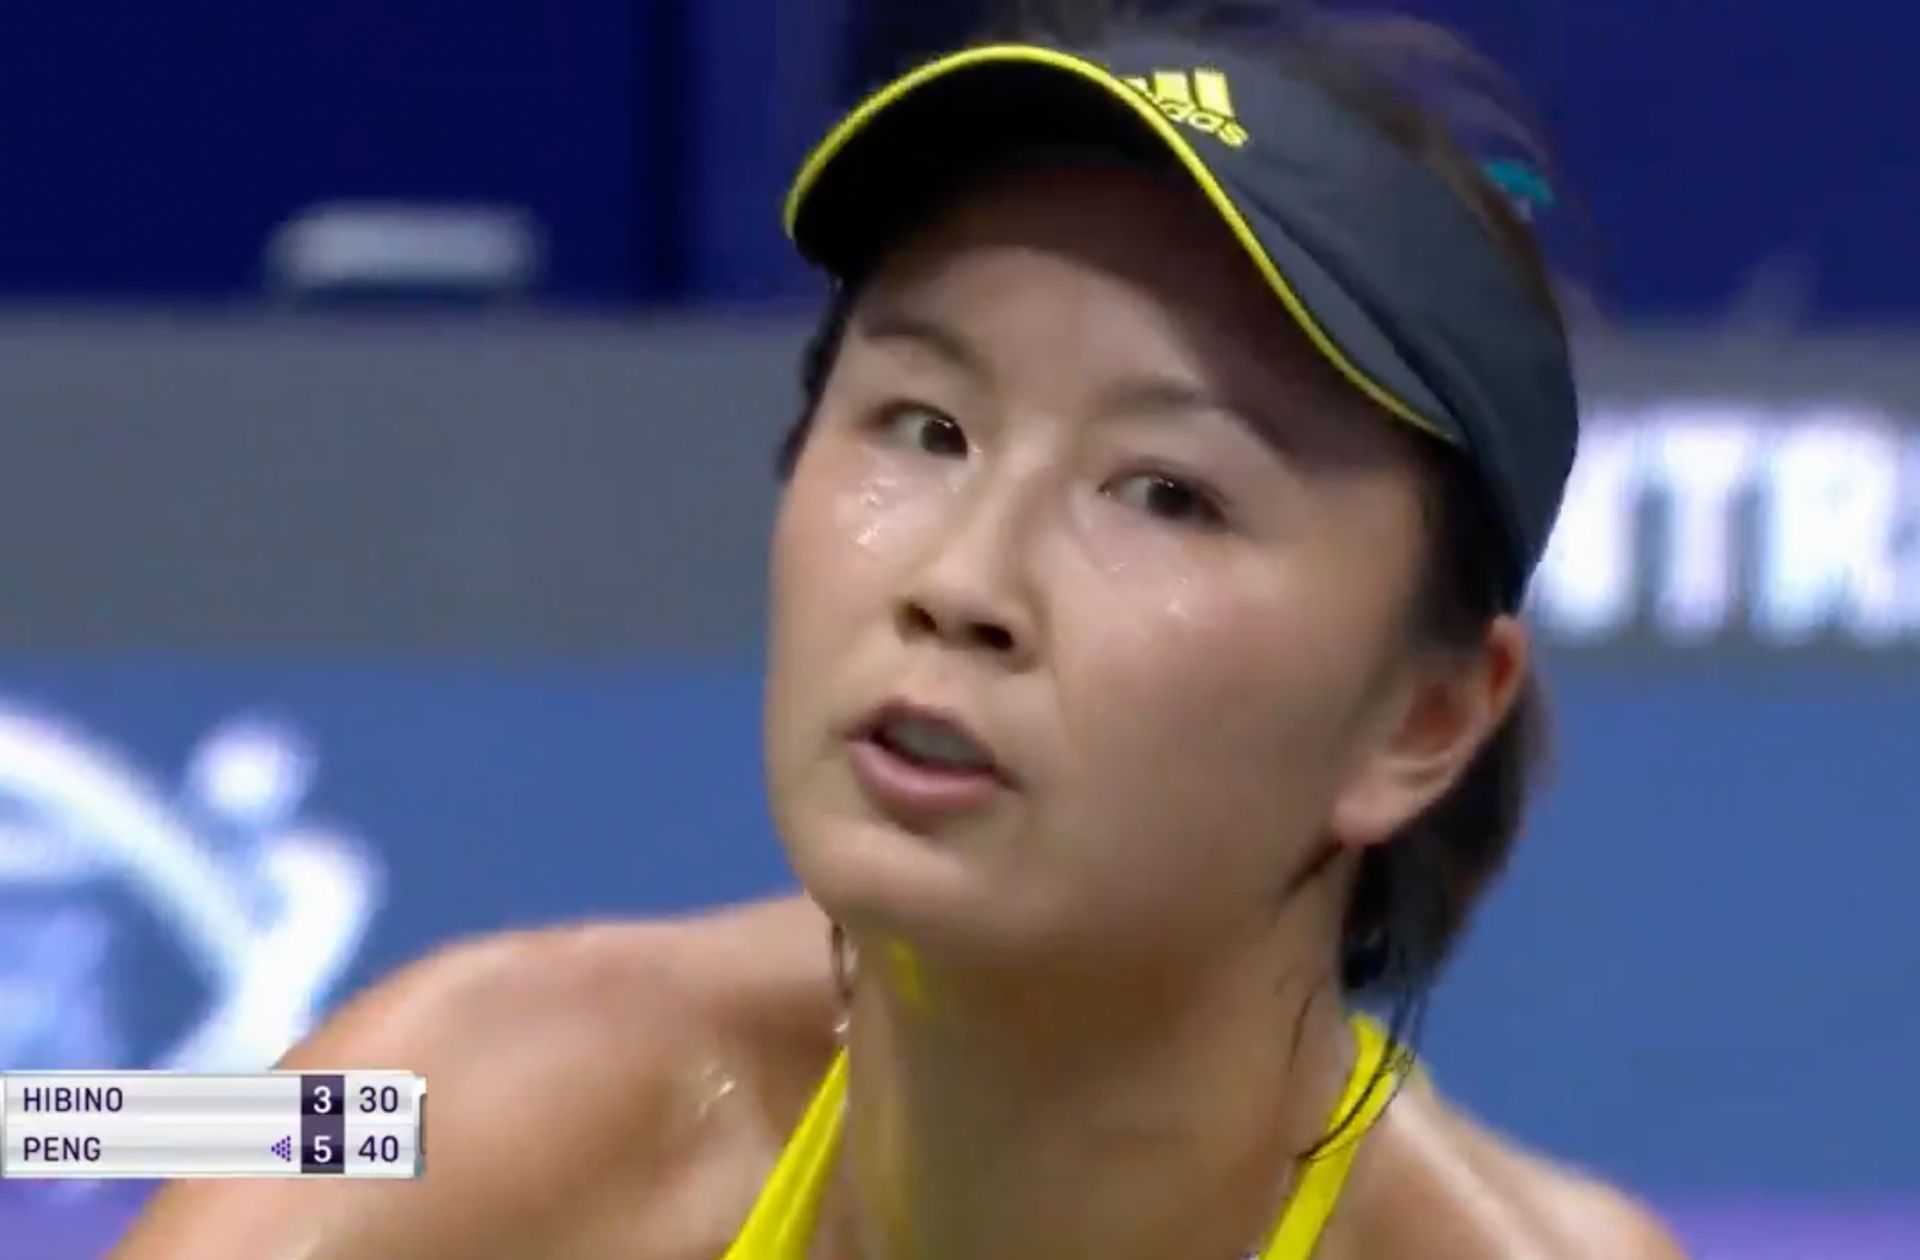 La tenniswoman Peng Shuai nie son accusation de viol dans une vidéo douteuse